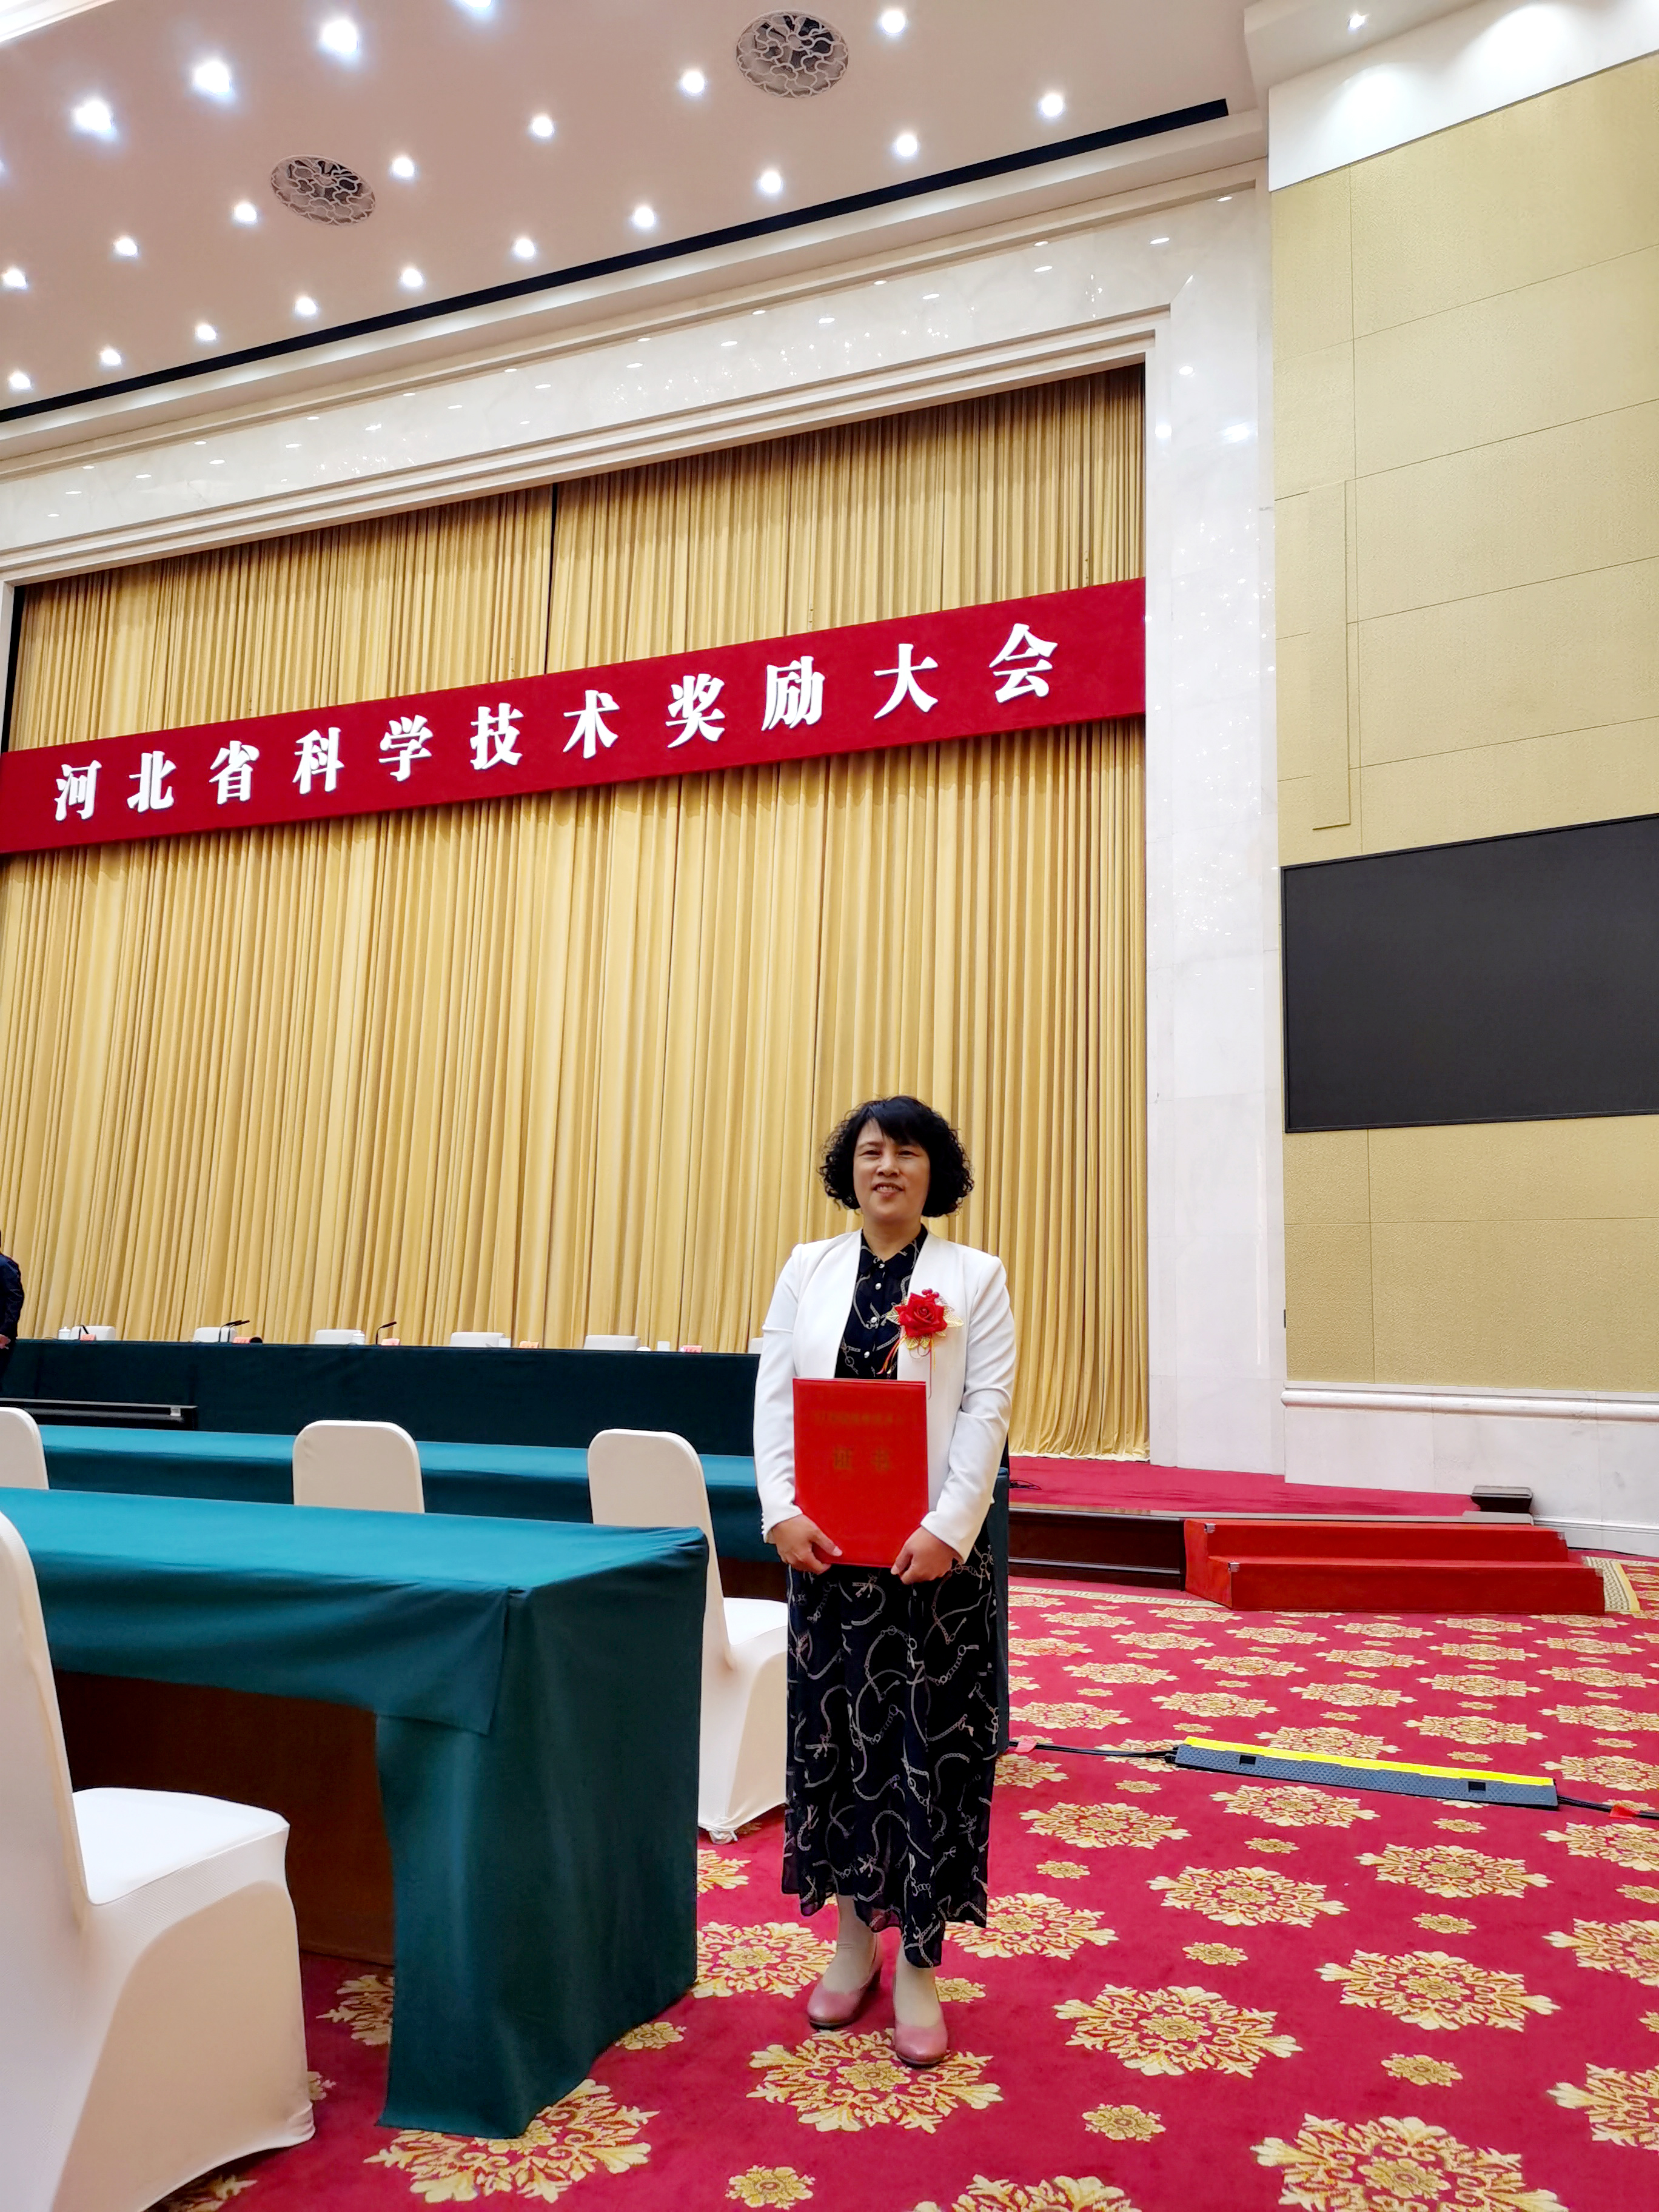 该院冯金淼同志作为项目代表到河北省科学技术奖励大会上台领奖。.jpg